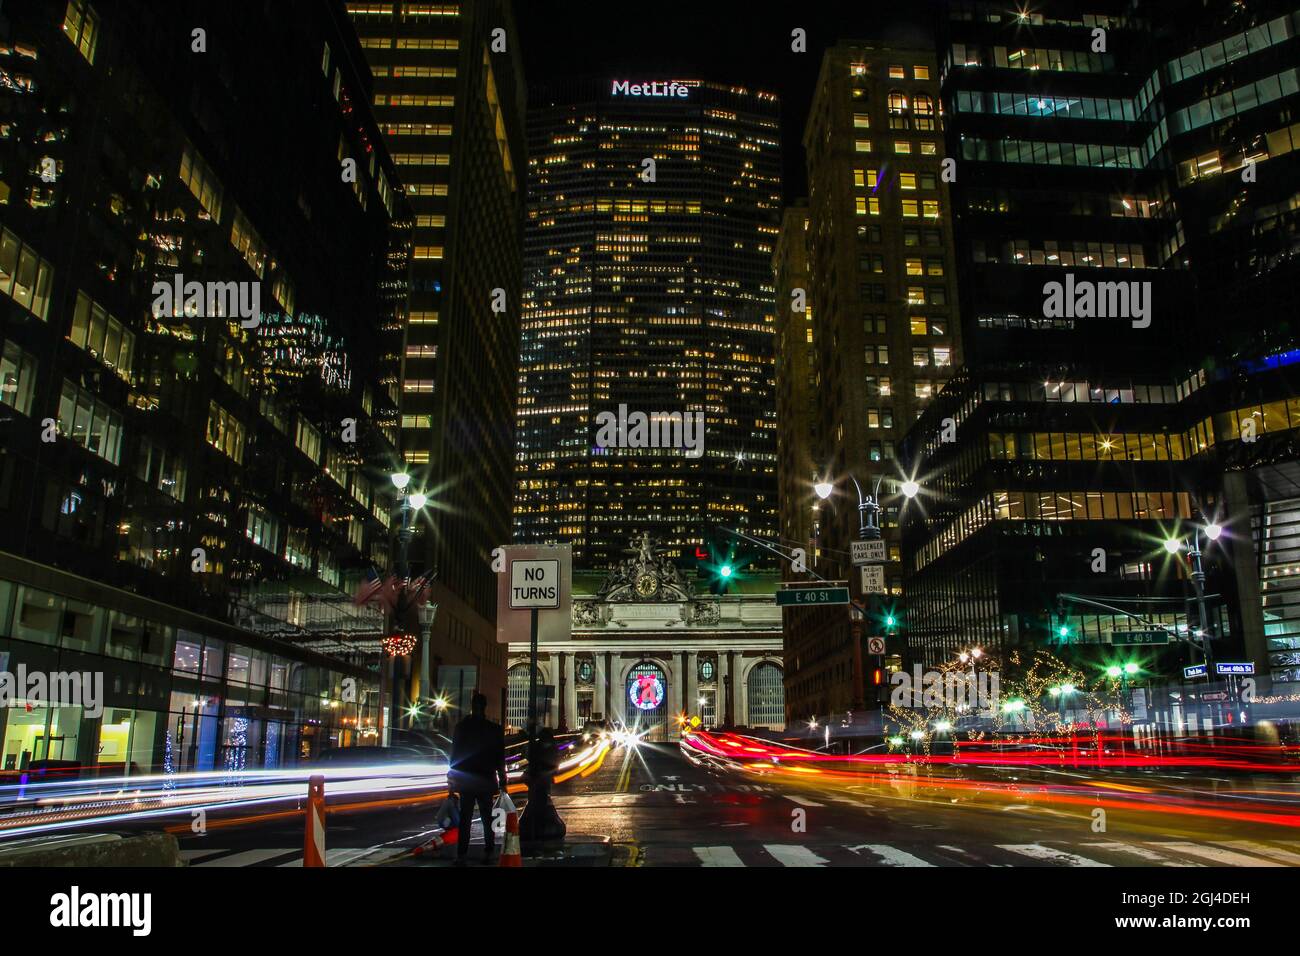 NEW YORK, NY, USA - 27 DÉCEMBRE 2018 : belles soirées avec lumières de rue et de bâtiments près de Grand Central terminal avec bâtiment MetLife Banque D'Images